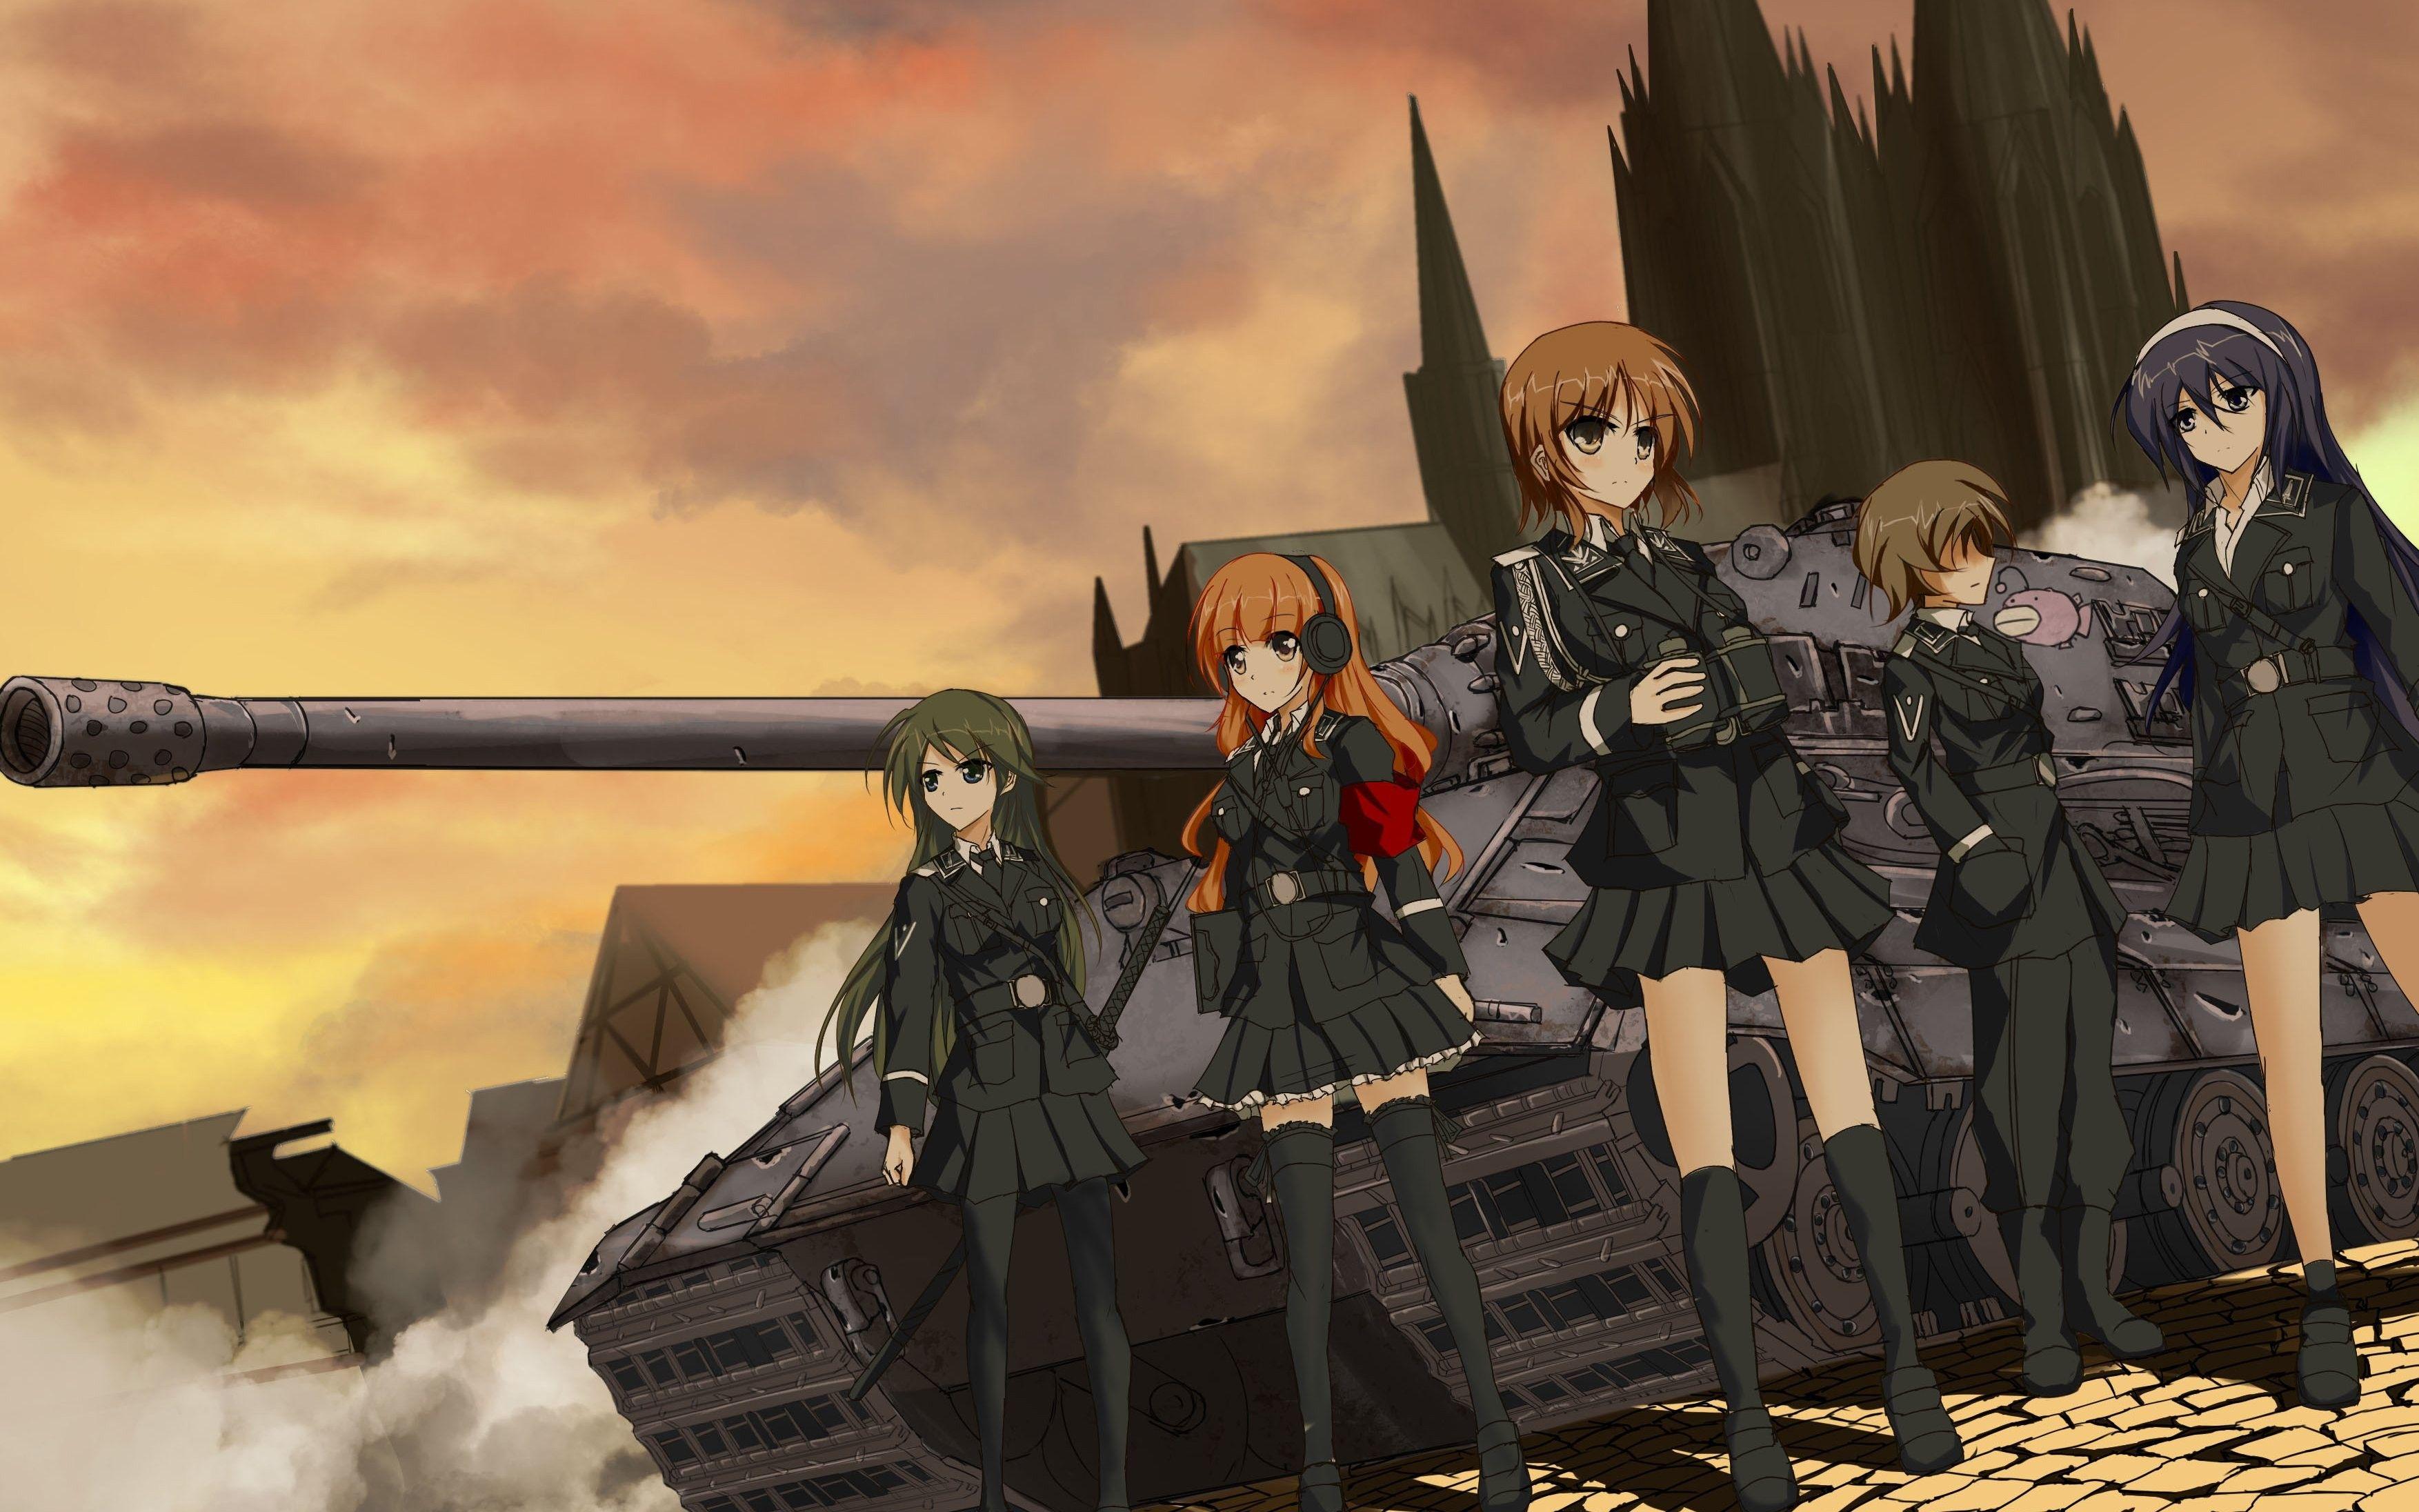 Girls und Panzer Wallpaper and Background Image